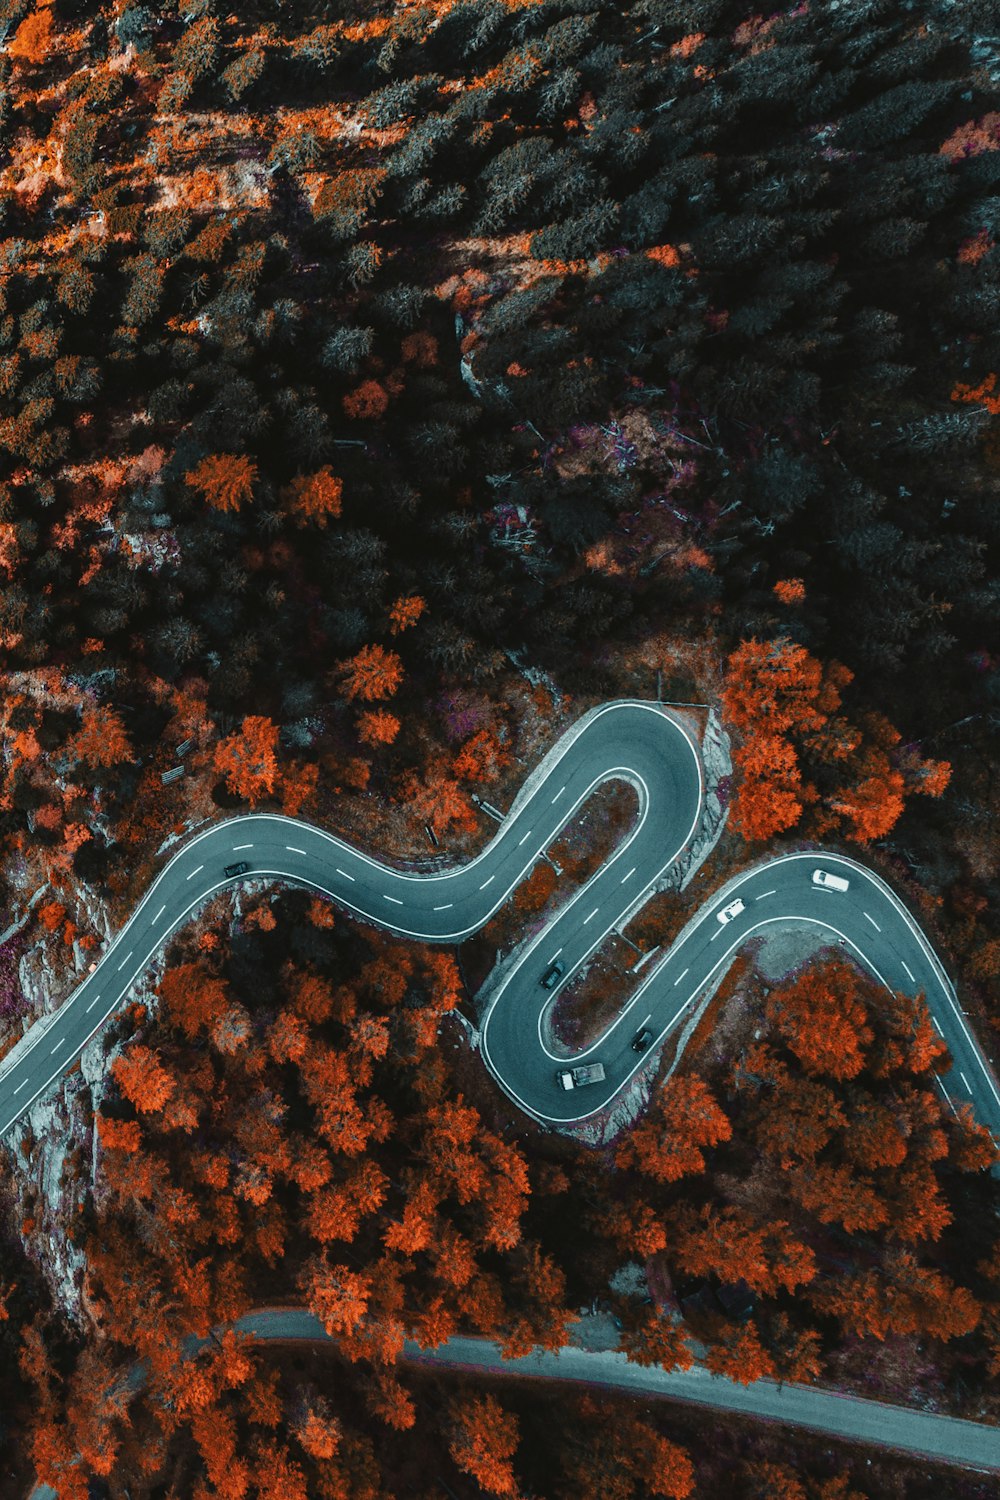 fotografia aérea de estrada de asfalto cercada de árvores